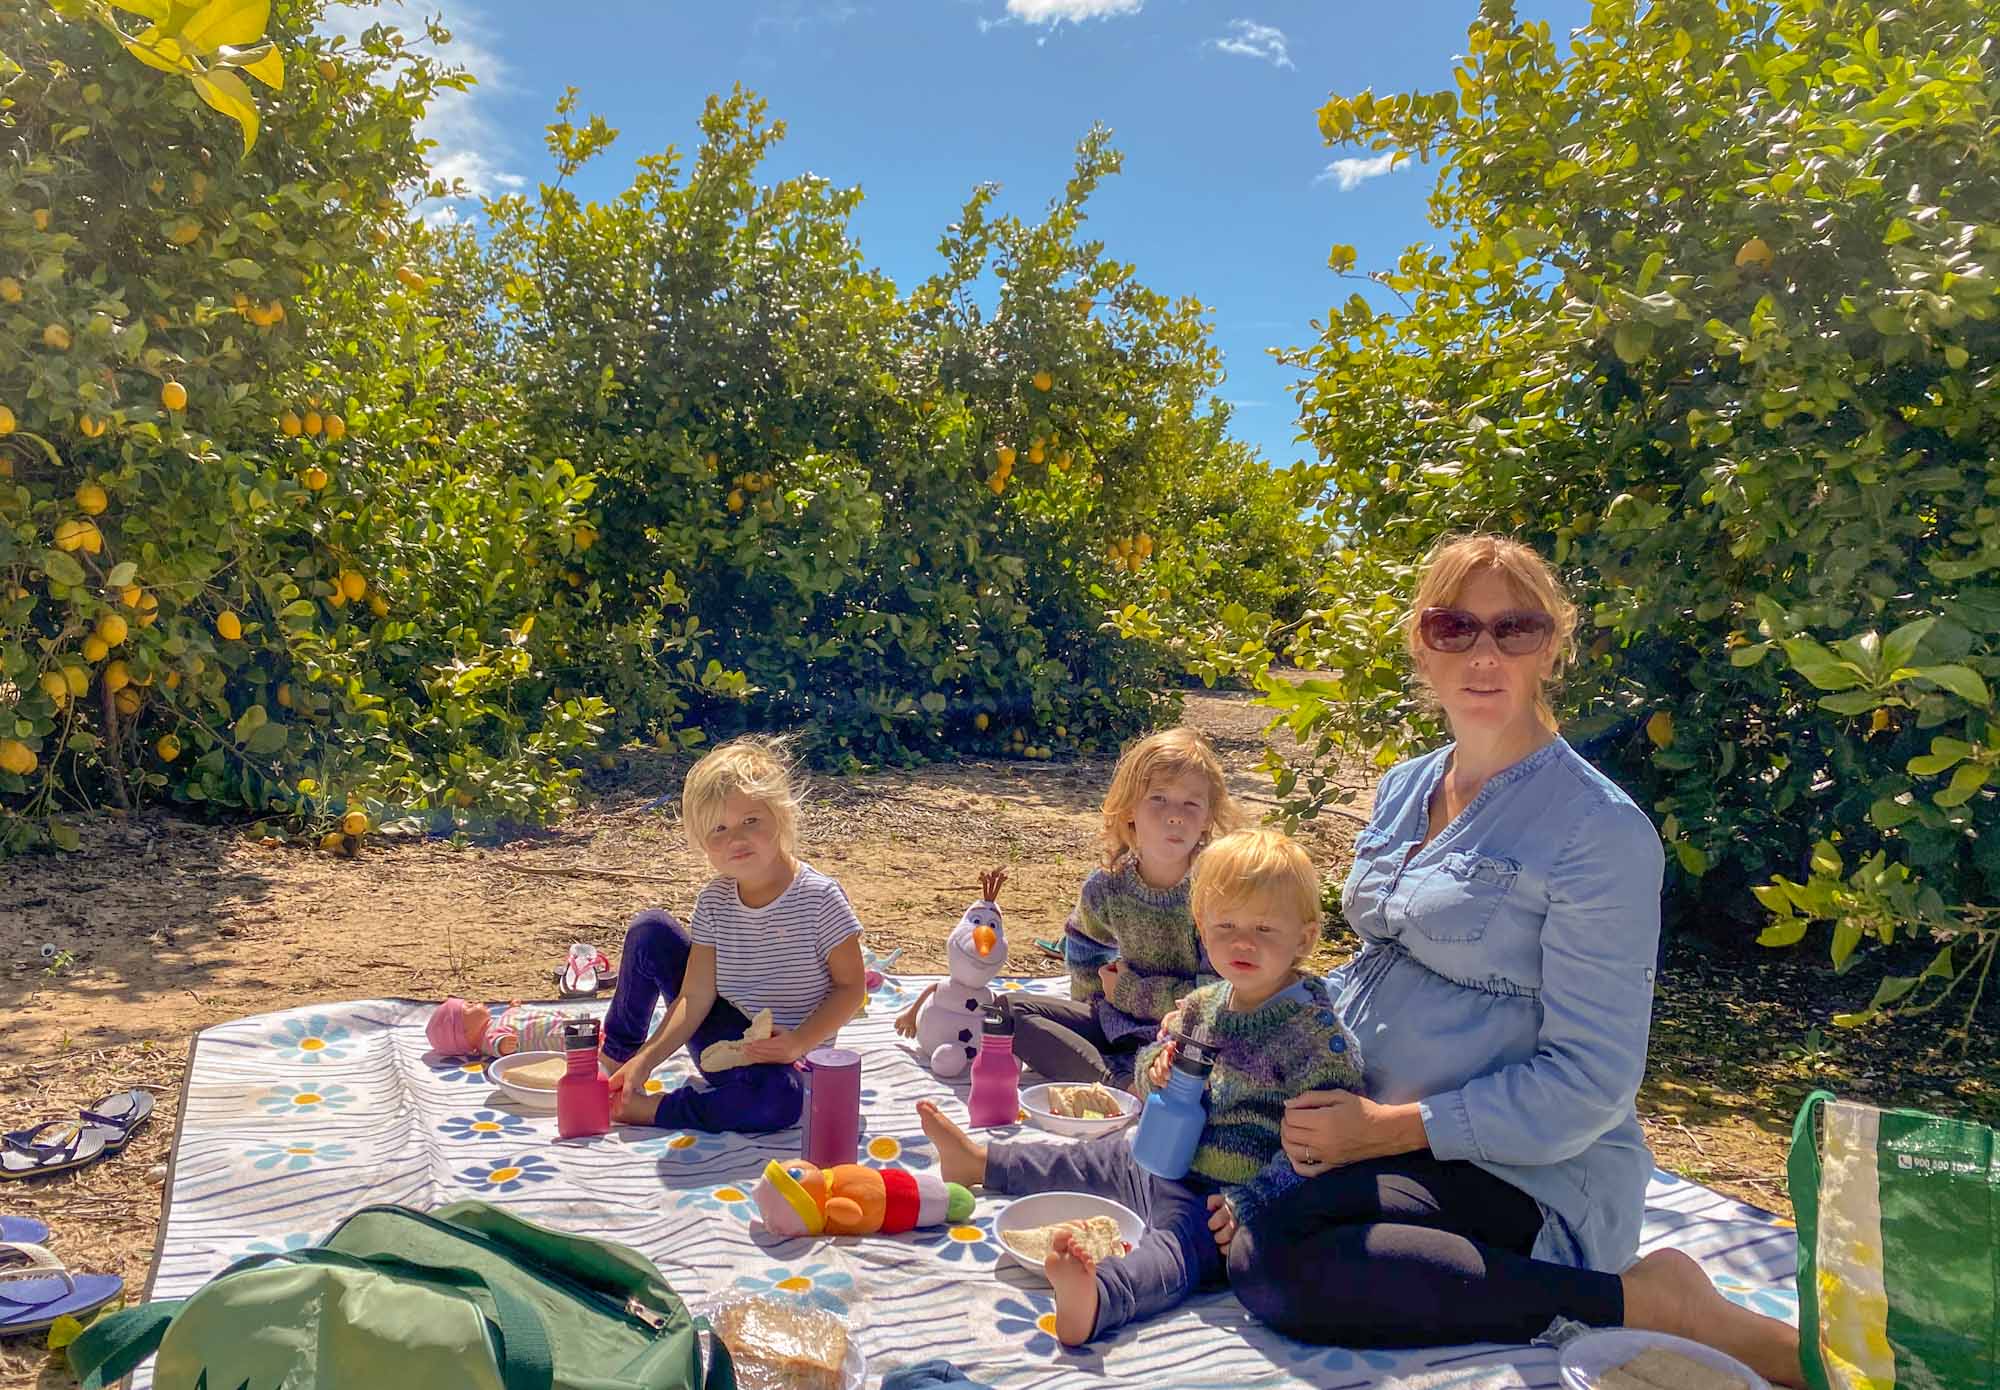 Family sat outside amongst lemon trees eating a picnic